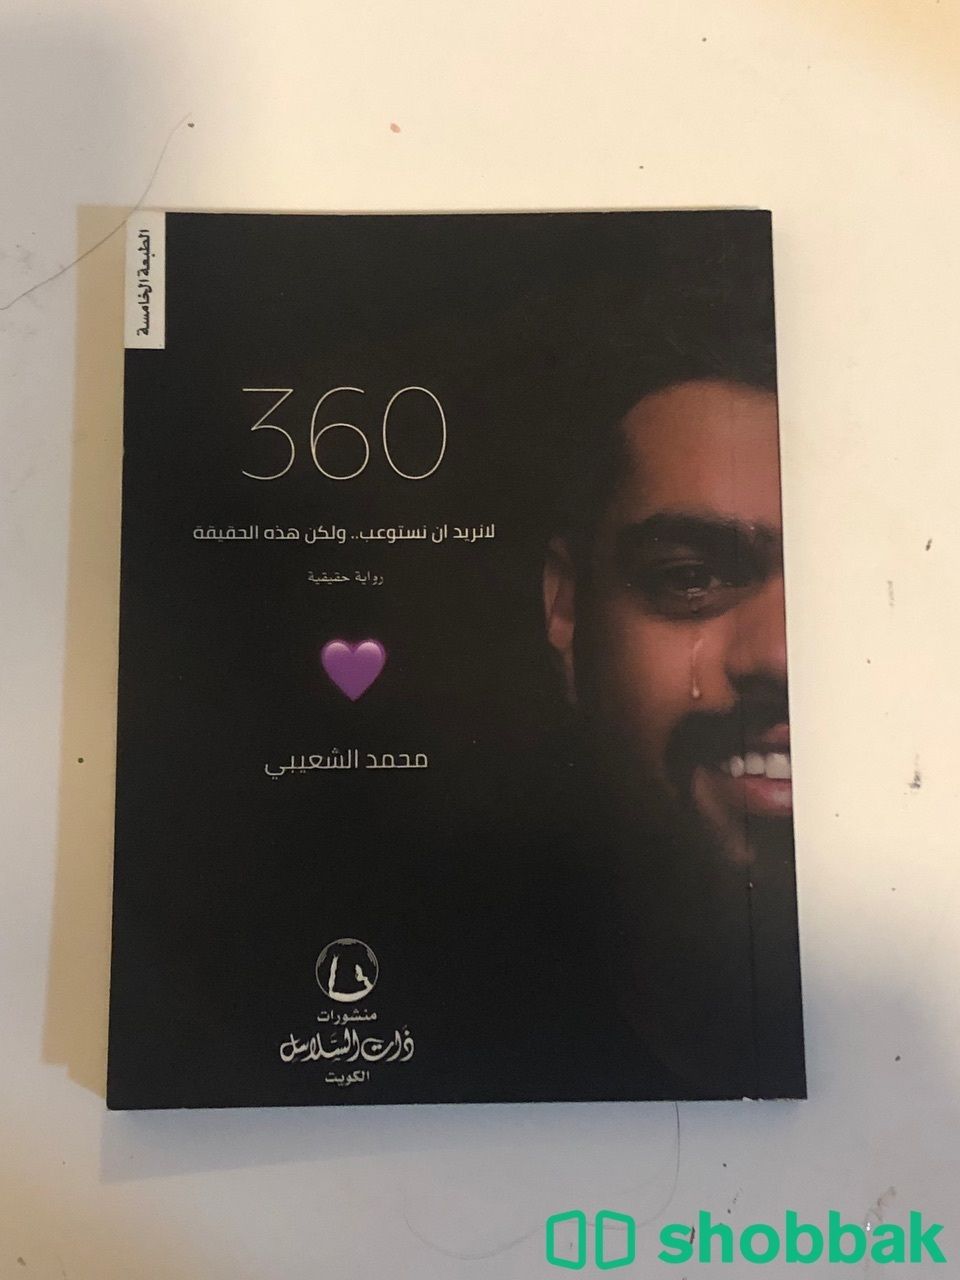 360 Shobbak Saudi Arabia